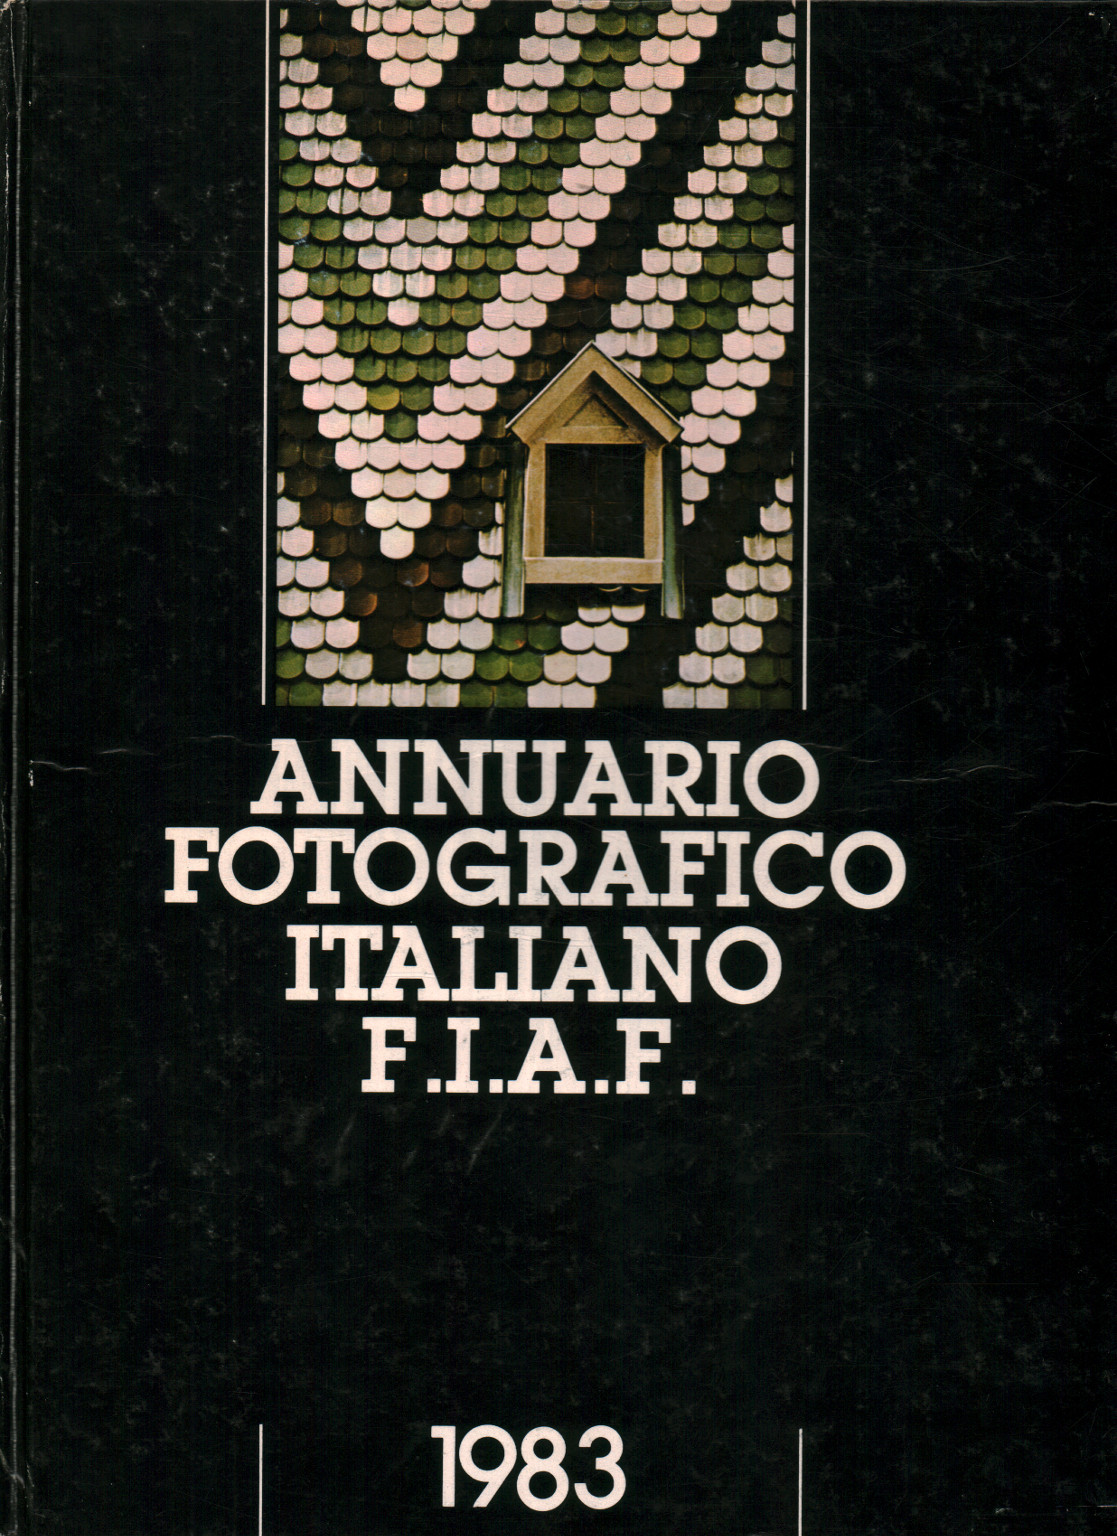 L'annuario fotografico italiano F.I.A.F 1983, s.a.